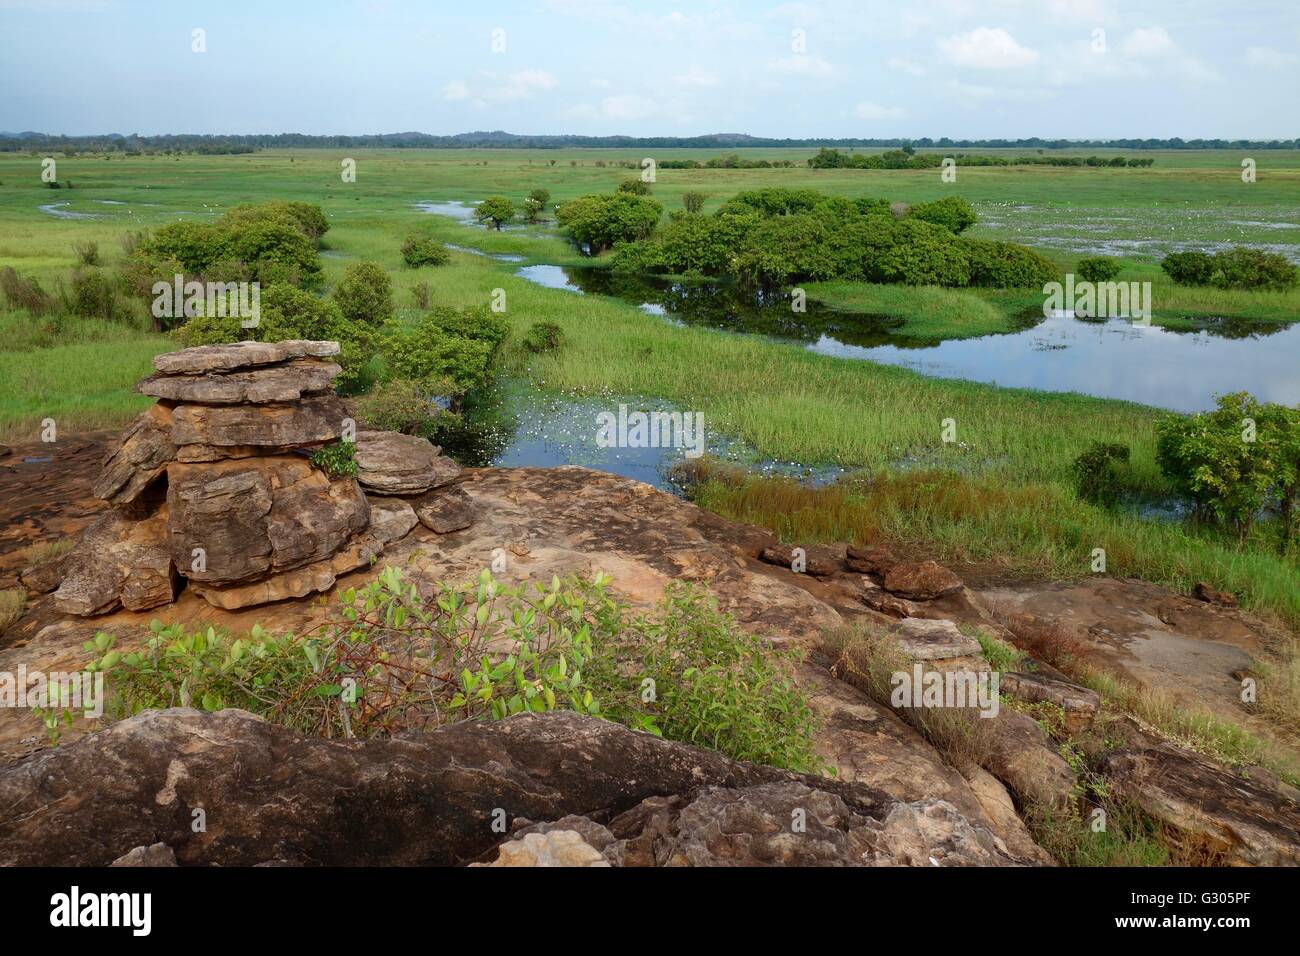 Vista de las llanuras aluviales y los humedales cerca de East Alligator River en el oeste de Arnhem Land, Territorio del Norte, Australia Foto de stock